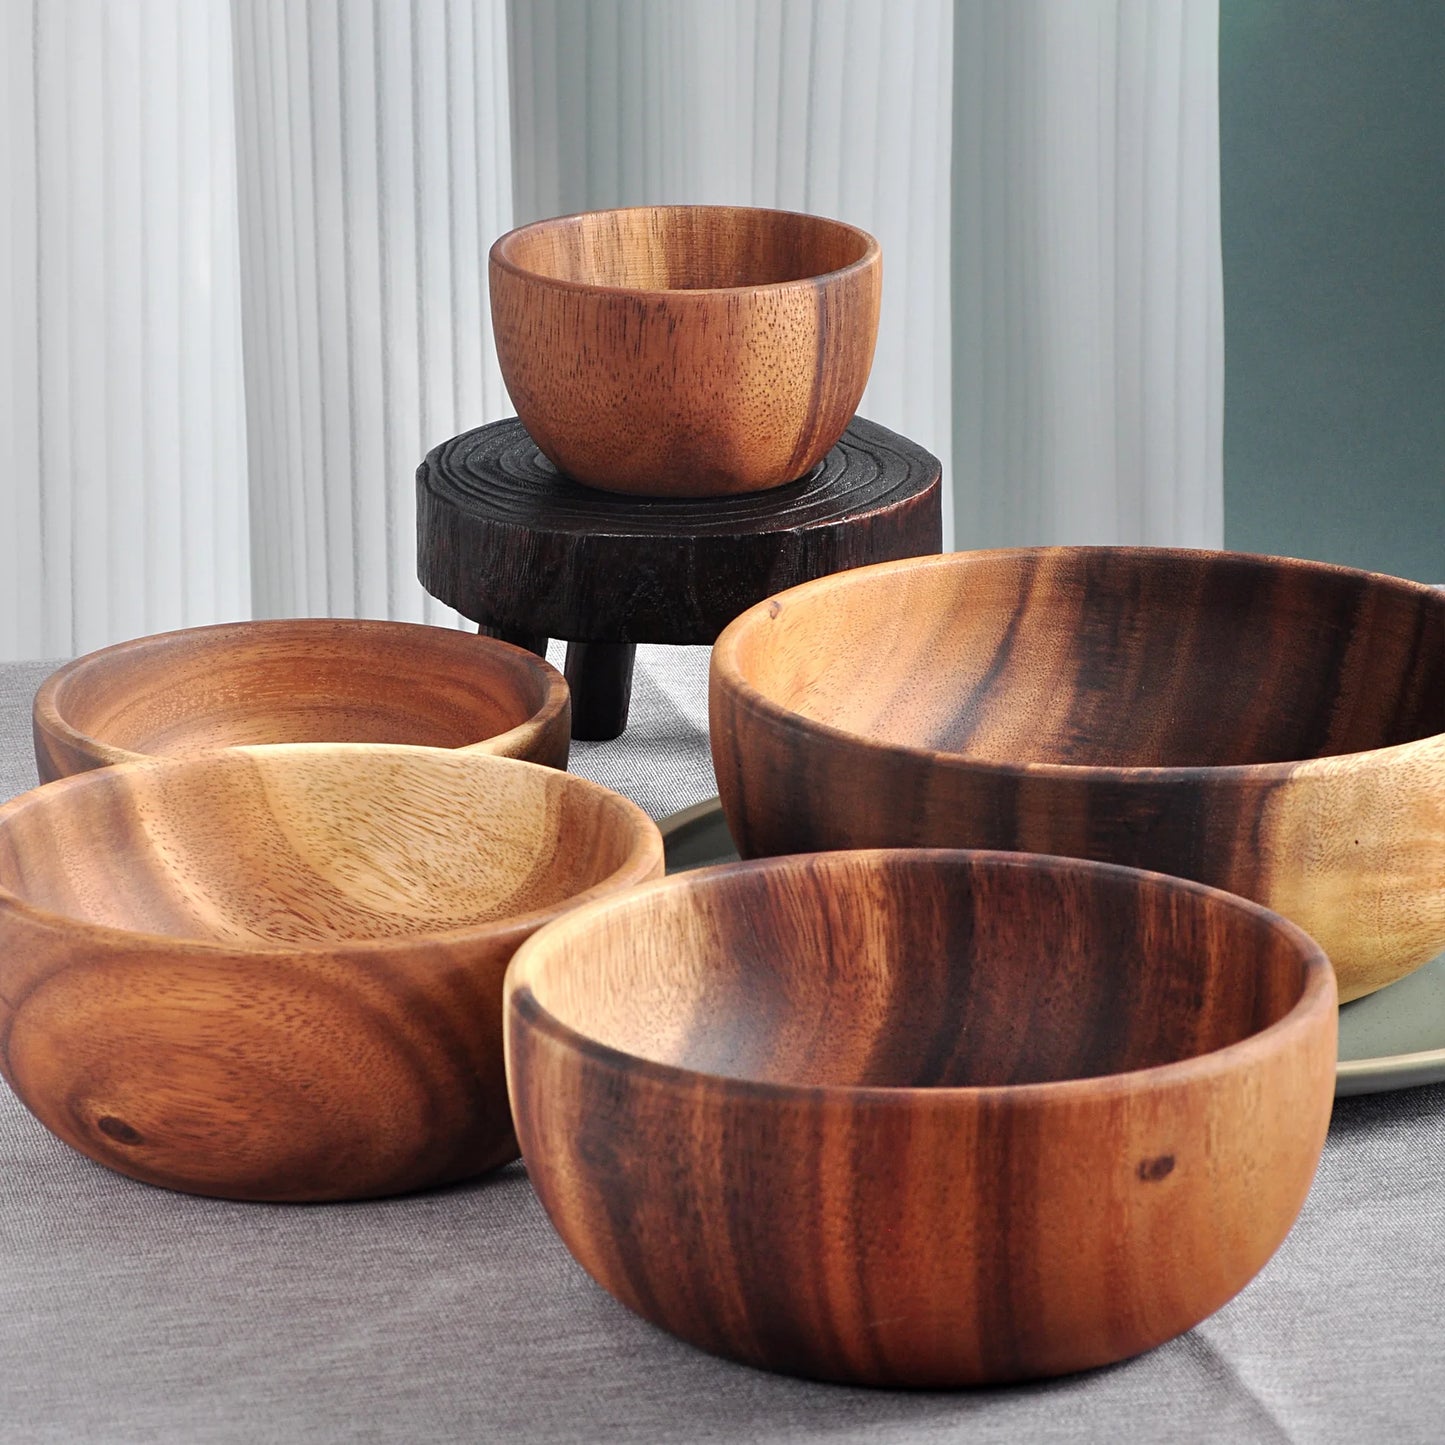 Wooden Kitchen Bowl - Round